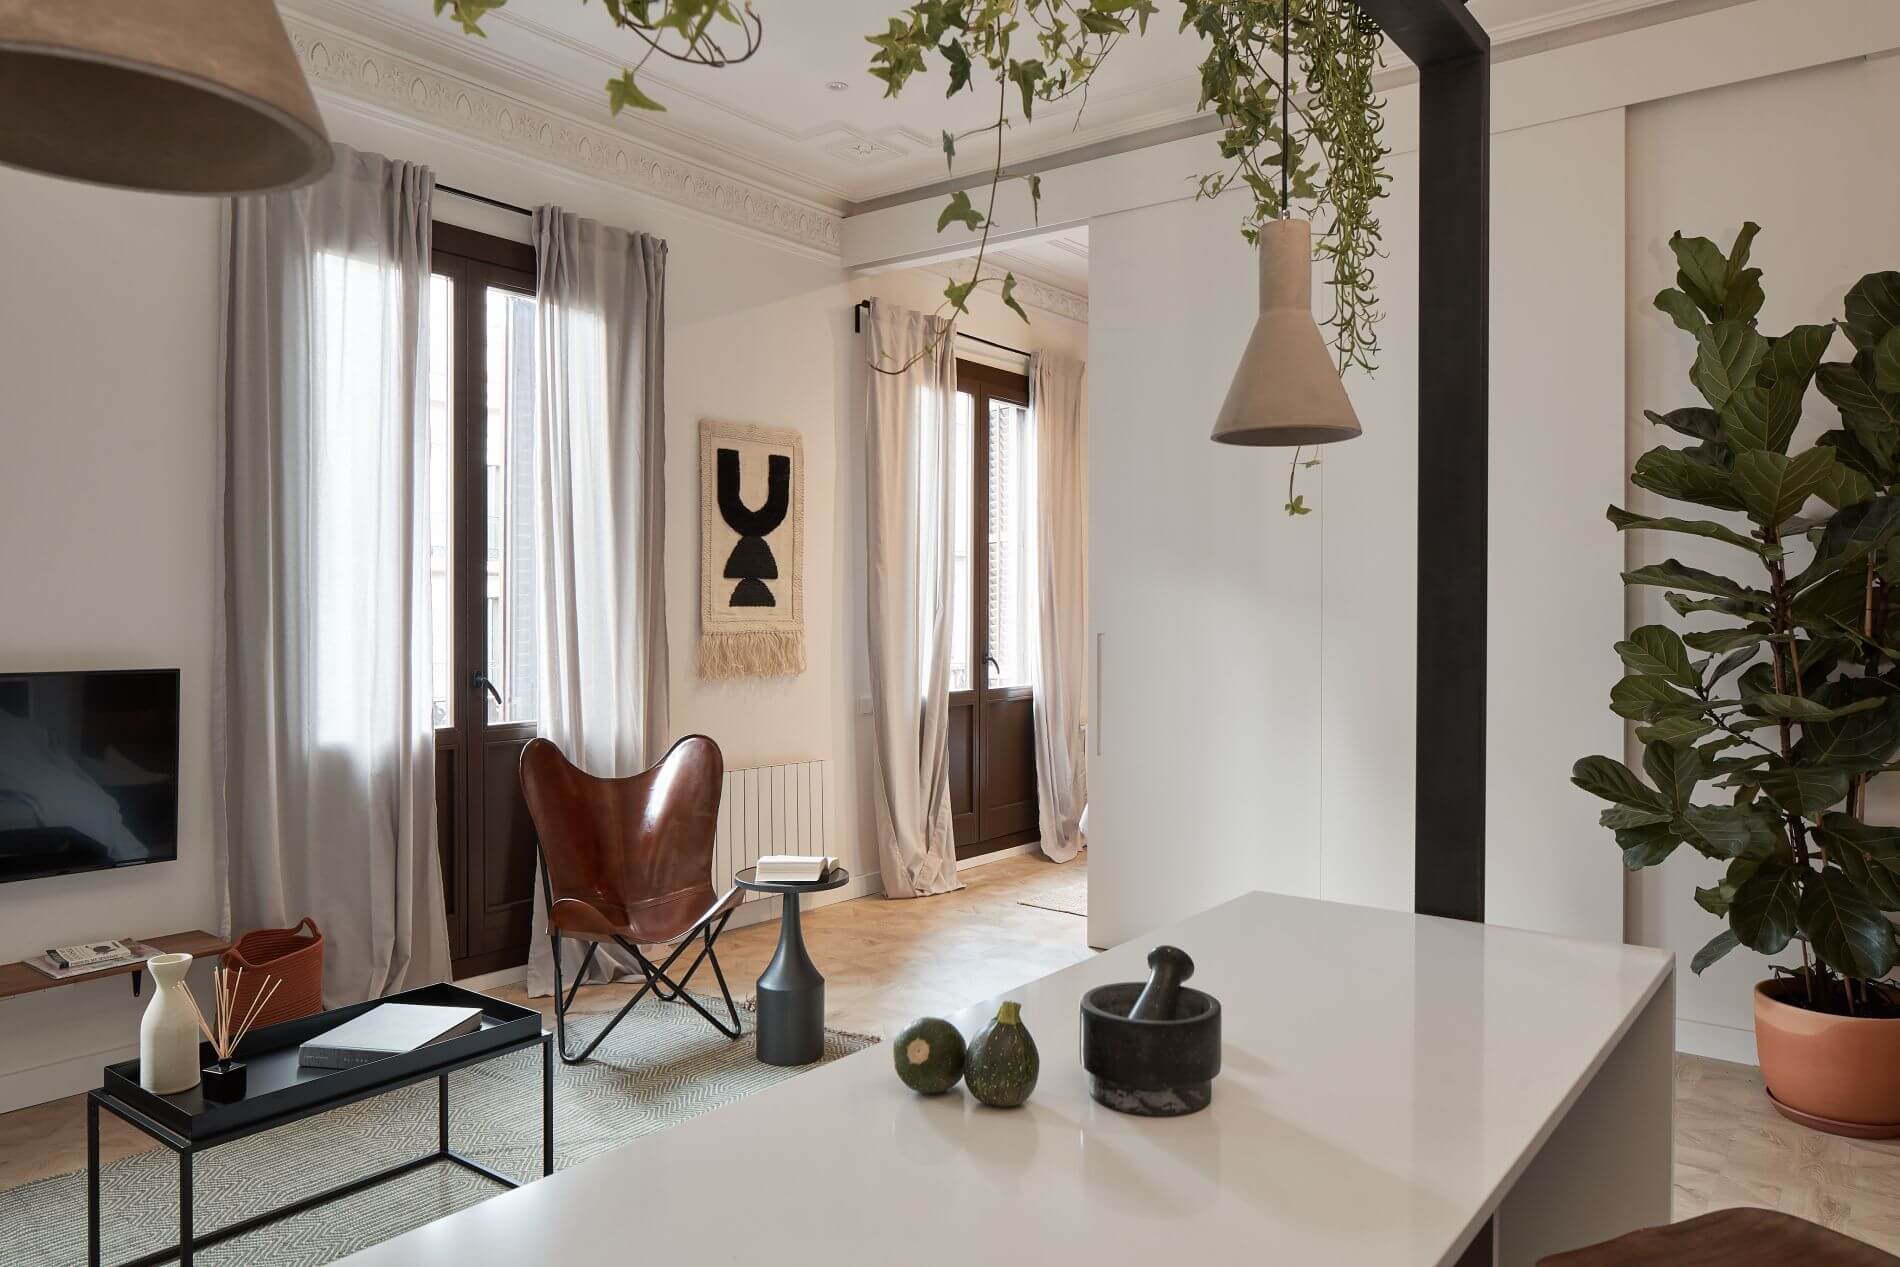 Luxury 1 bedroom apartment for rent in Barcelona